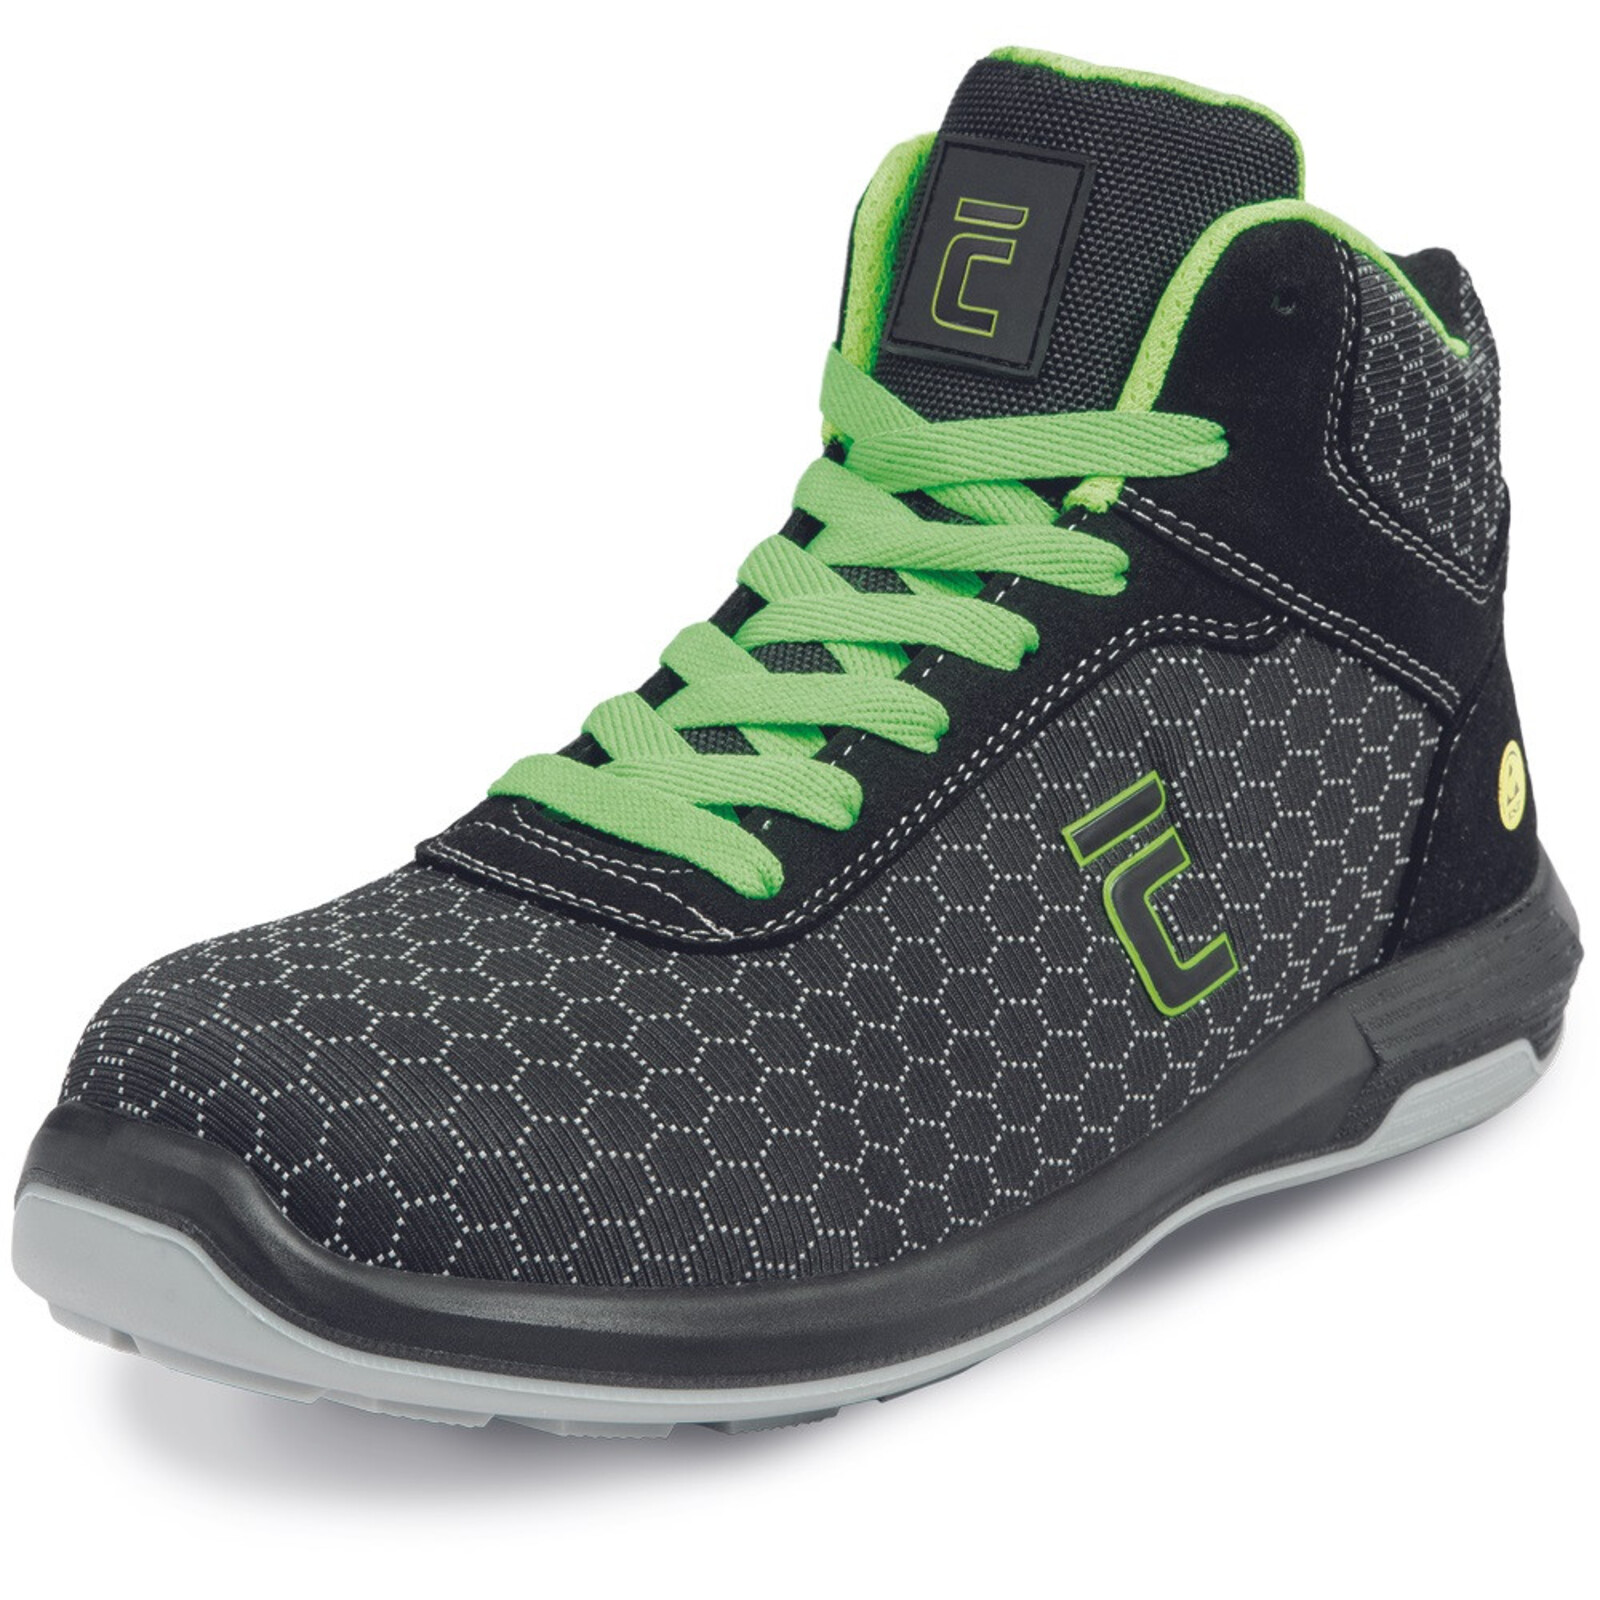 Bezpečnostná členková obuv Cerva Uttendorf MF ESD S3S SR - veľkosť: 39, farba: čierna/zelená